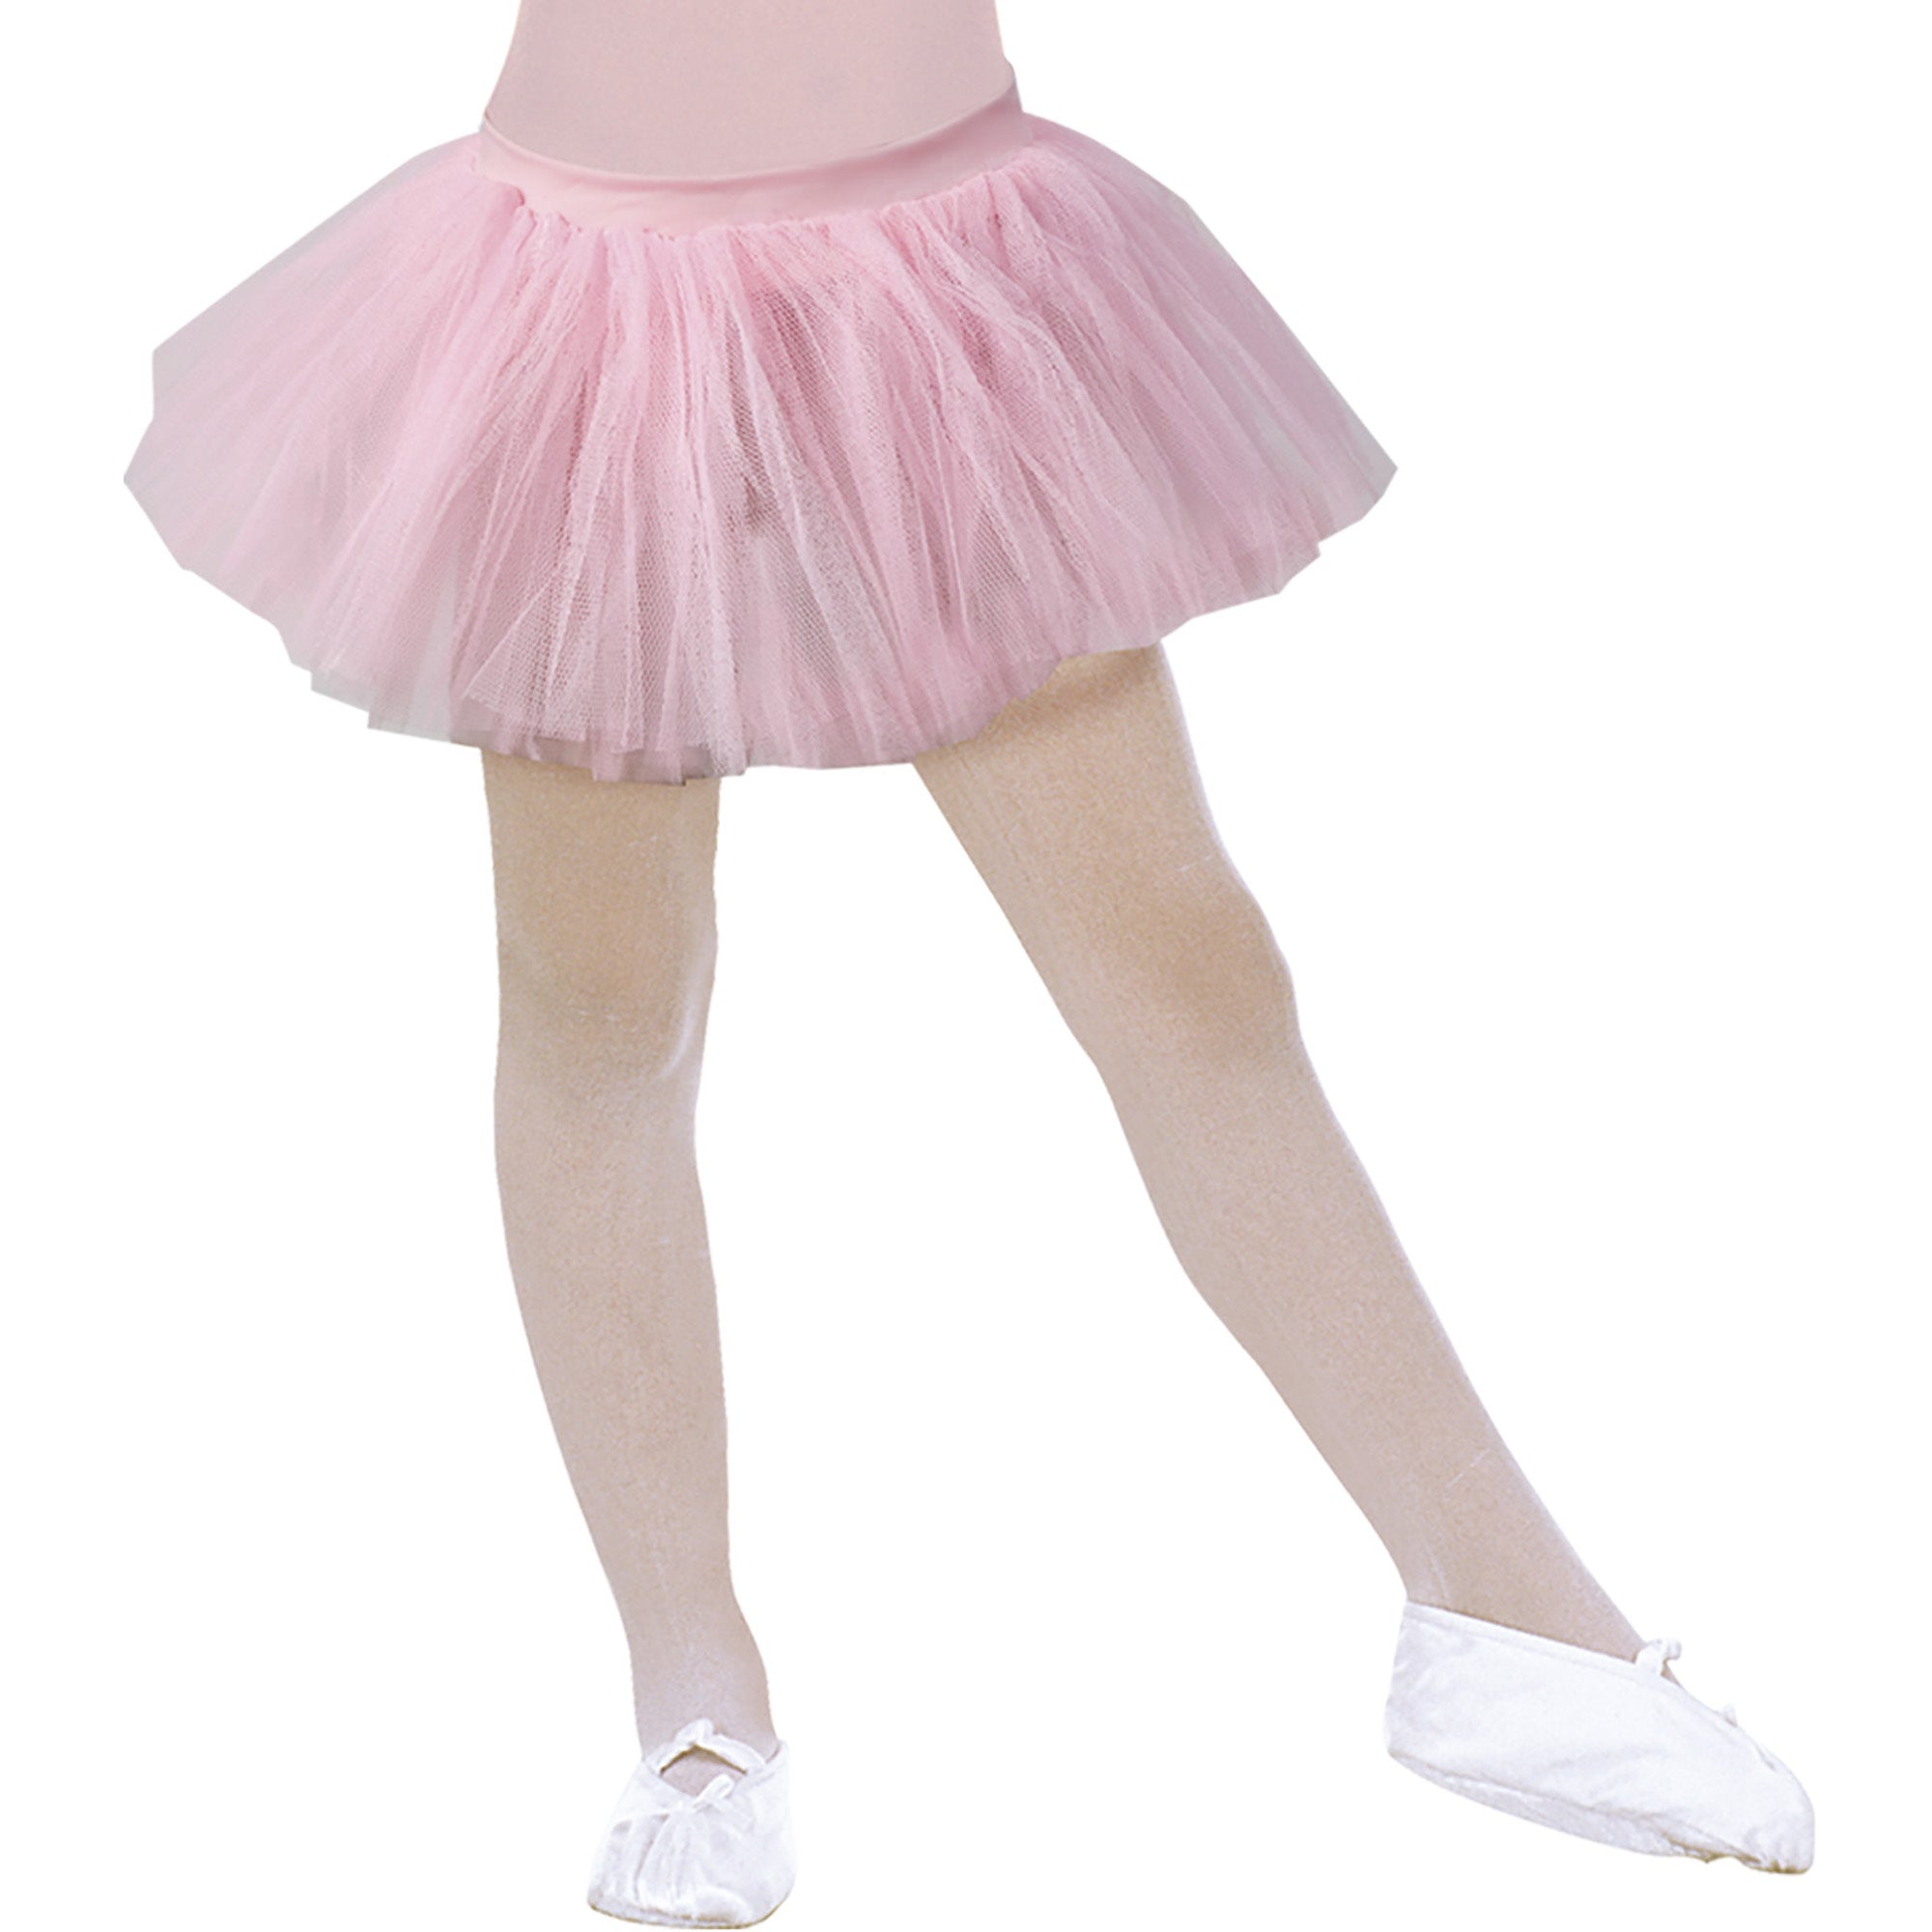 "Roze ballerinatutu voor meisjes - Verkleedattribuut - 104-116"